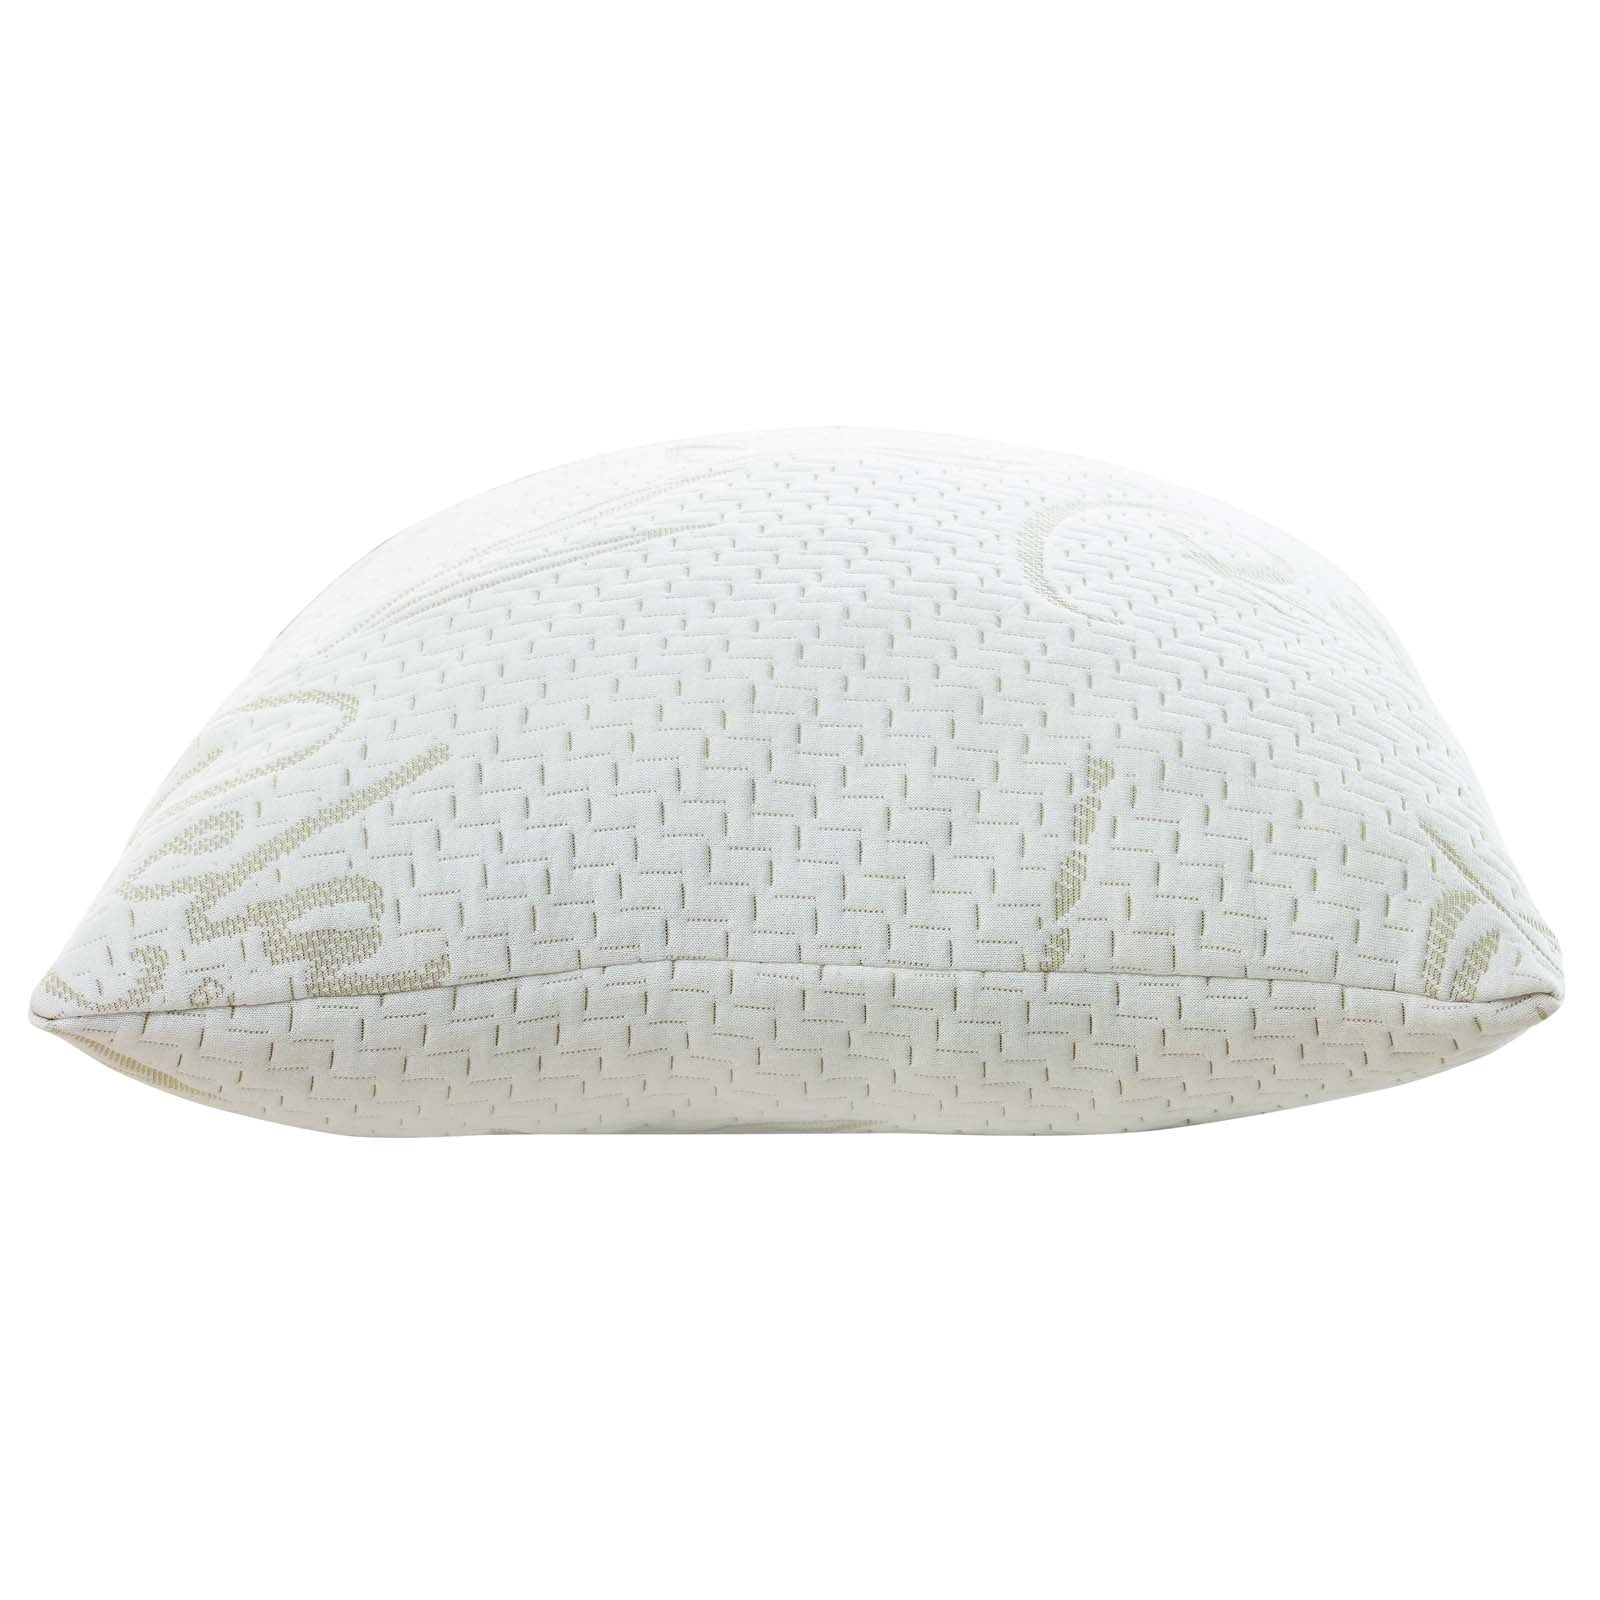 Modway Pillows - Relax Standard Queen Pillow White